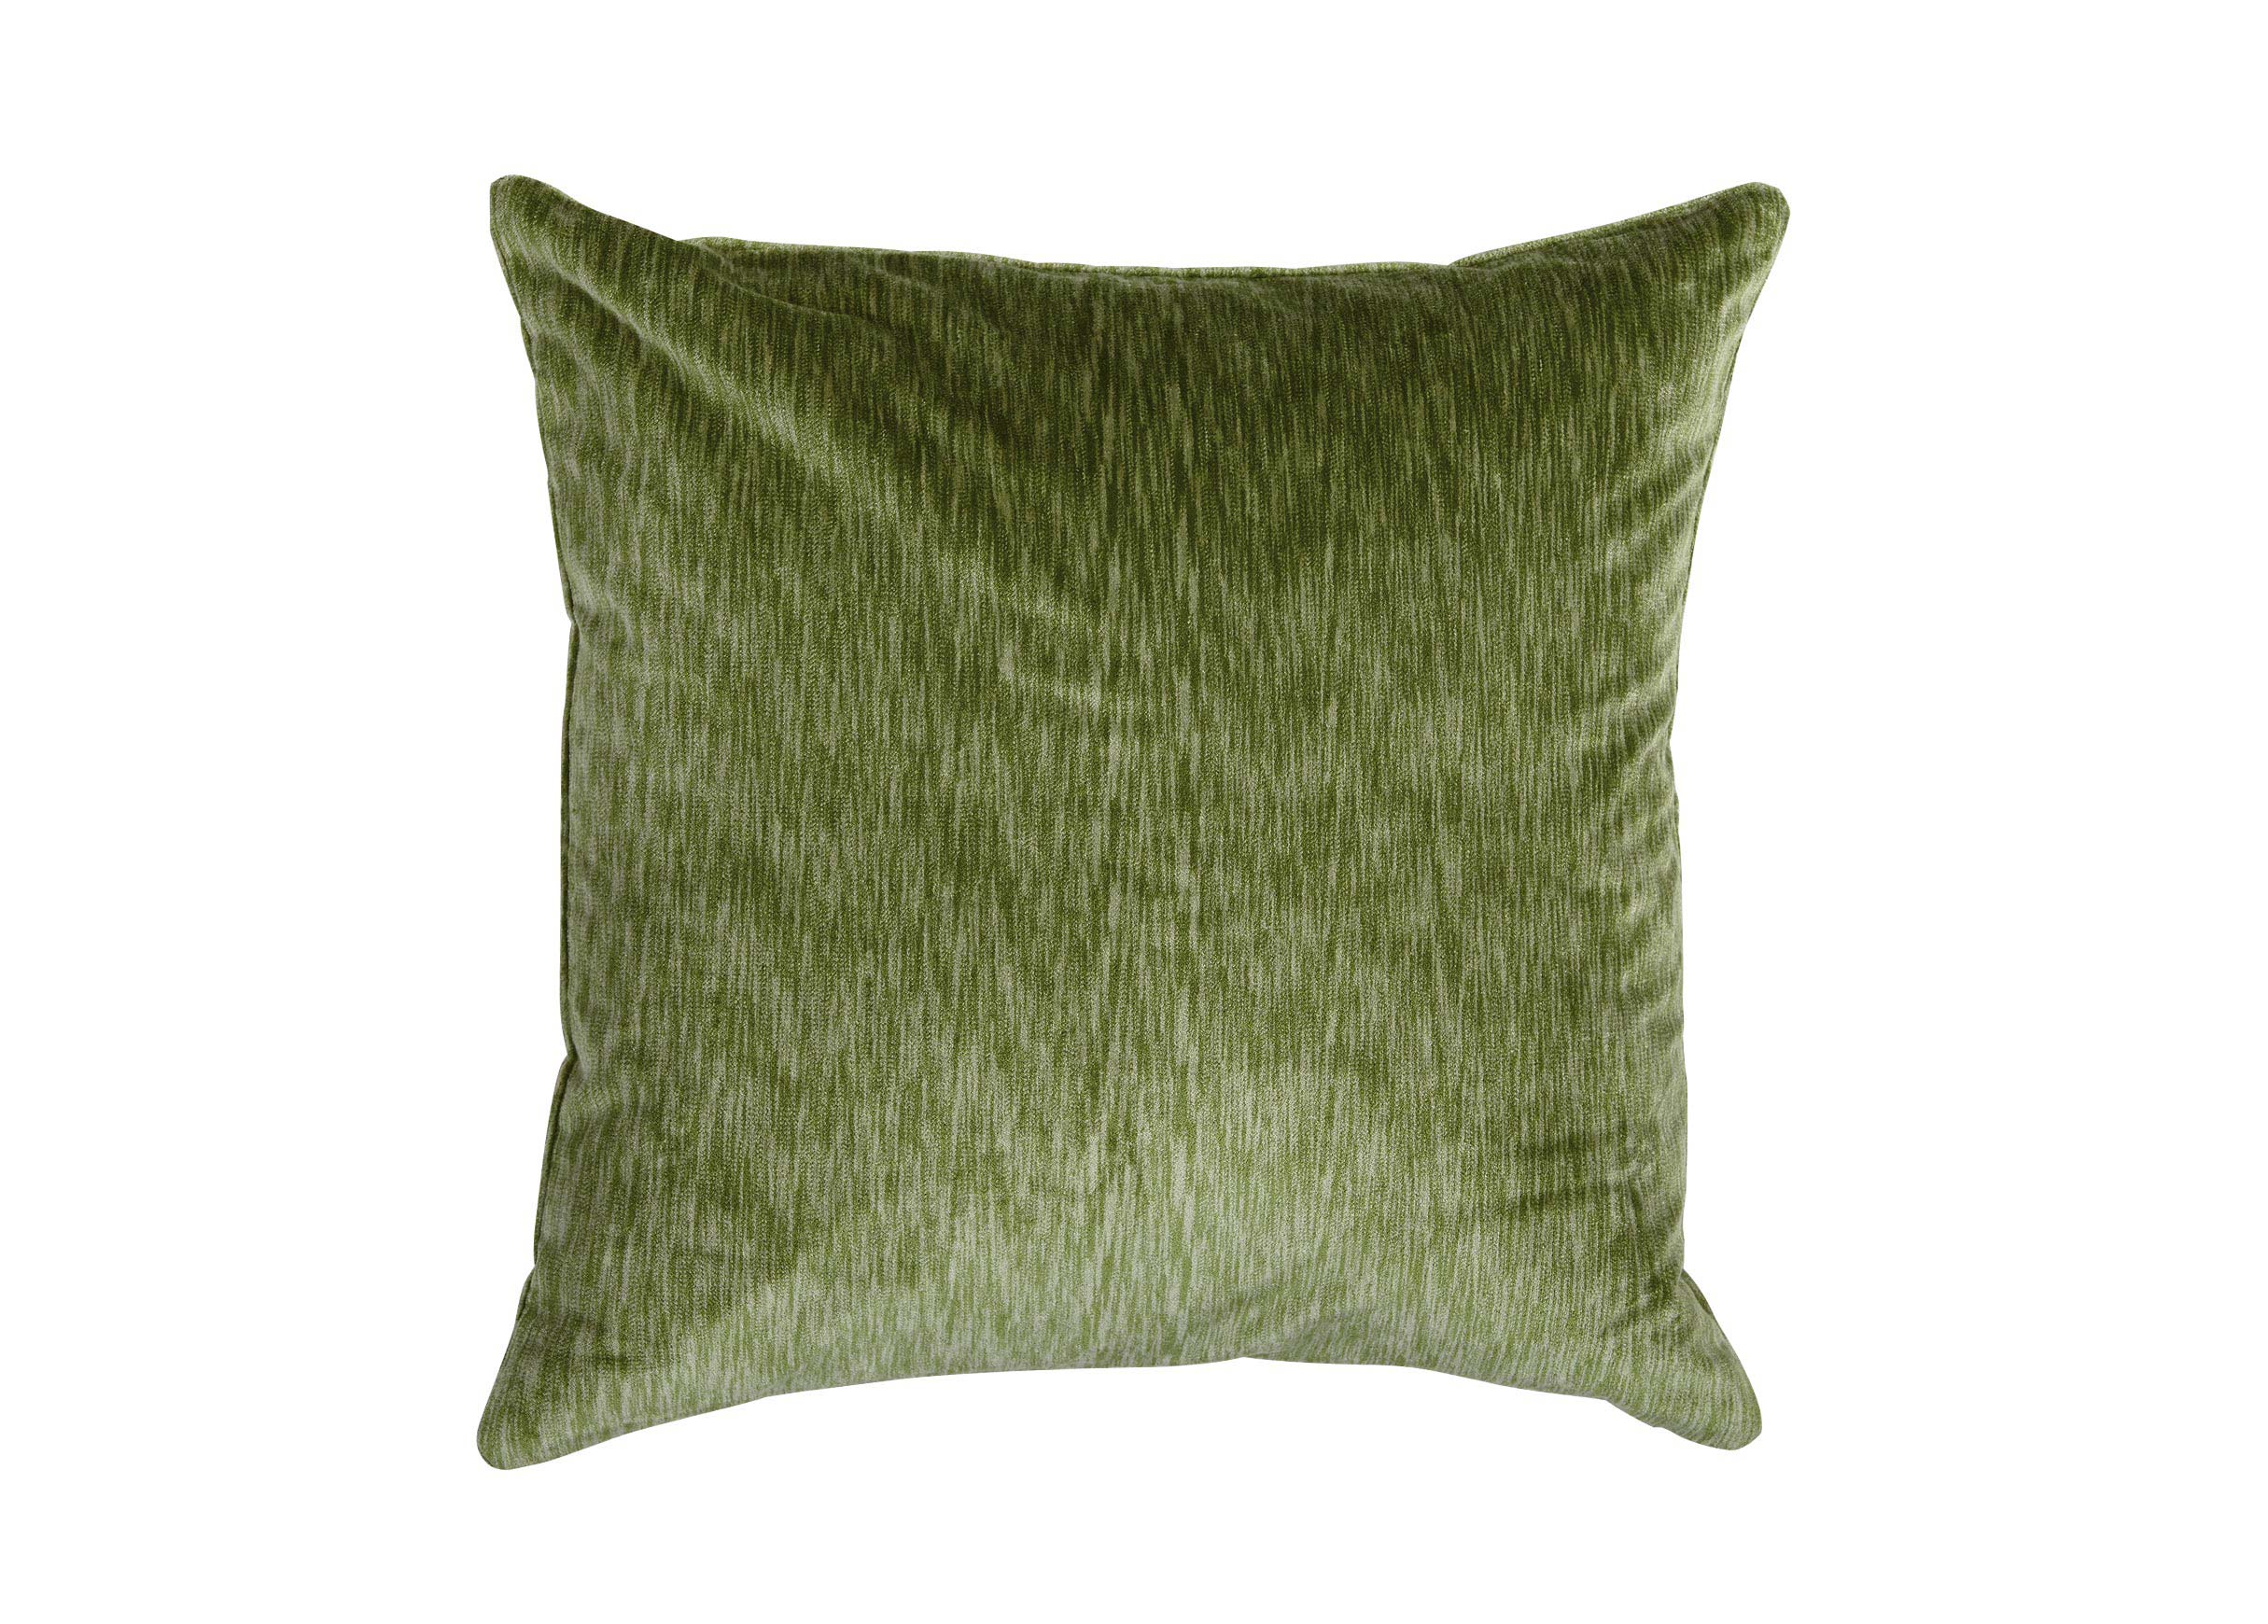  Green  Velvet  Throw Pillow  Ethan Allen Velvet  Throw 